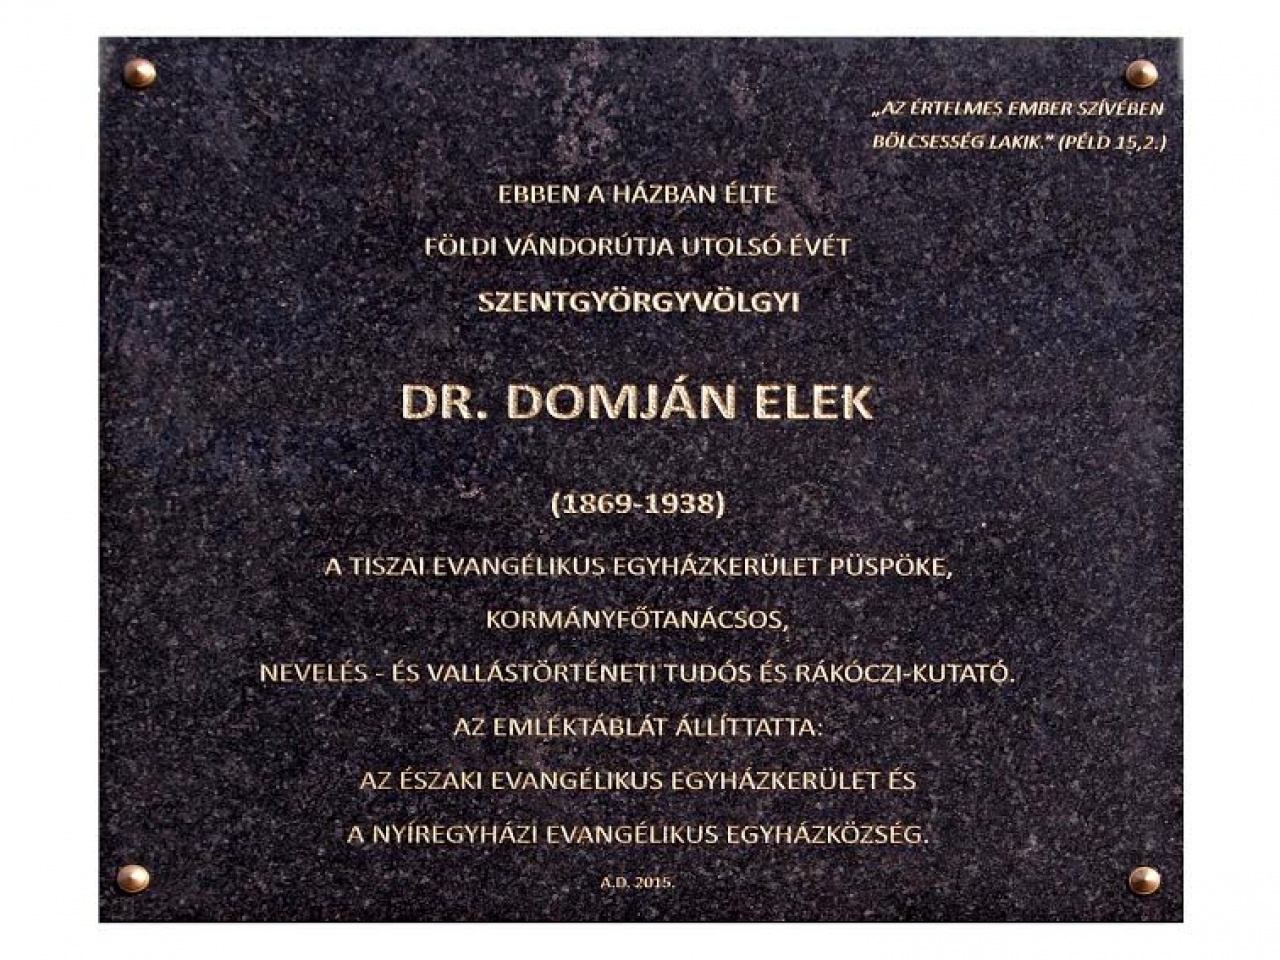 Dr. Domján Elek emléktáblája előtt